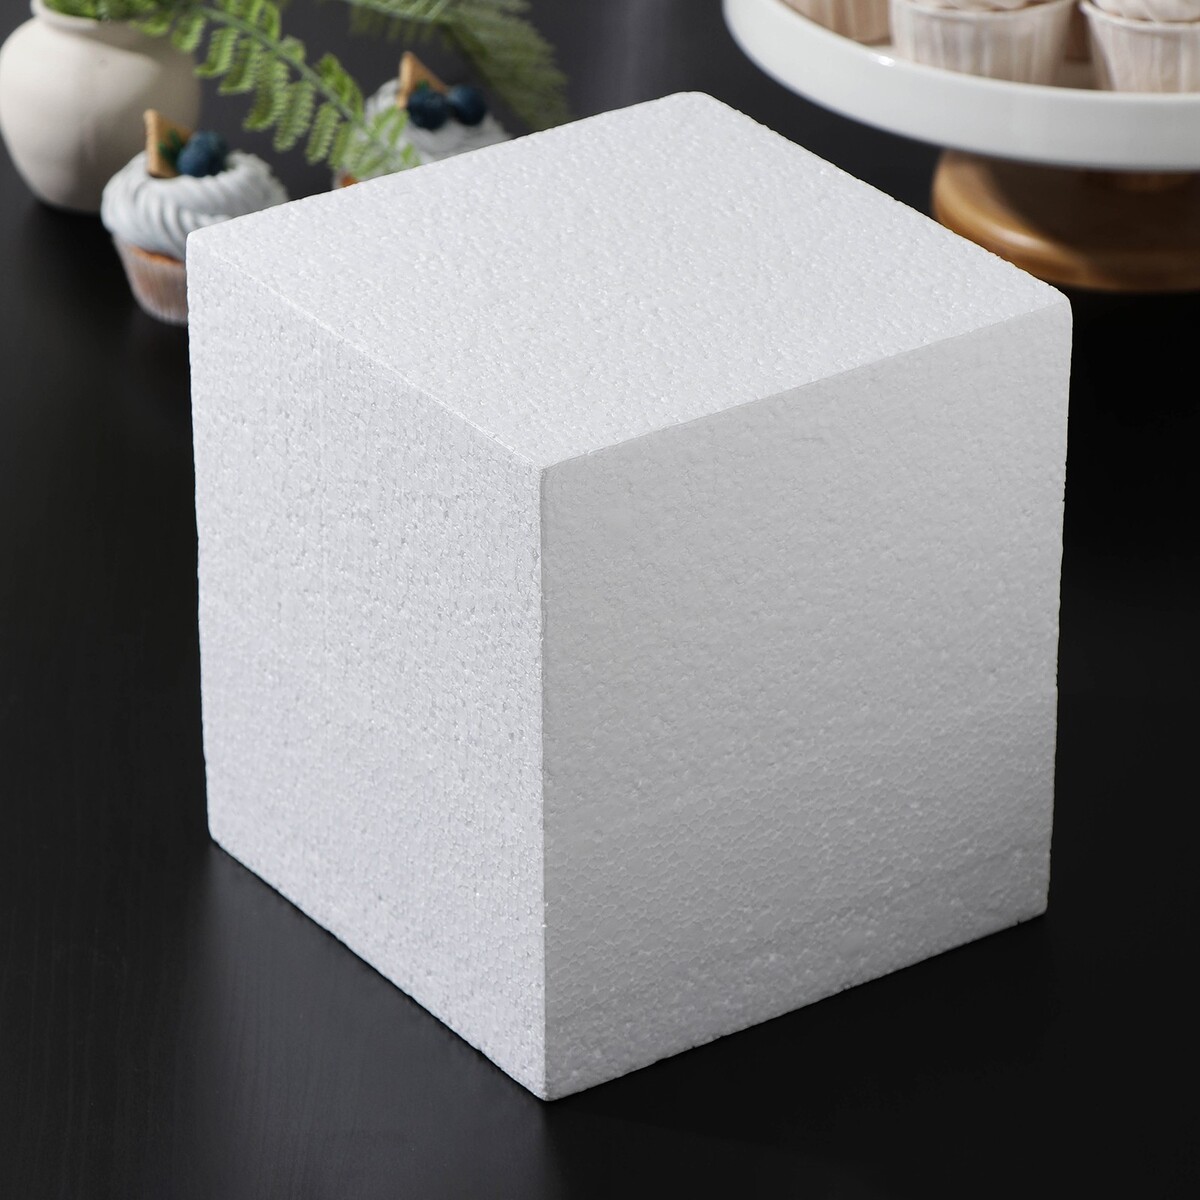 Фальшярус для торта квадратный, 18×18 см, h=20 см, цвет белый фальшярус для торта квадратный 18×18 см h 20 см белый